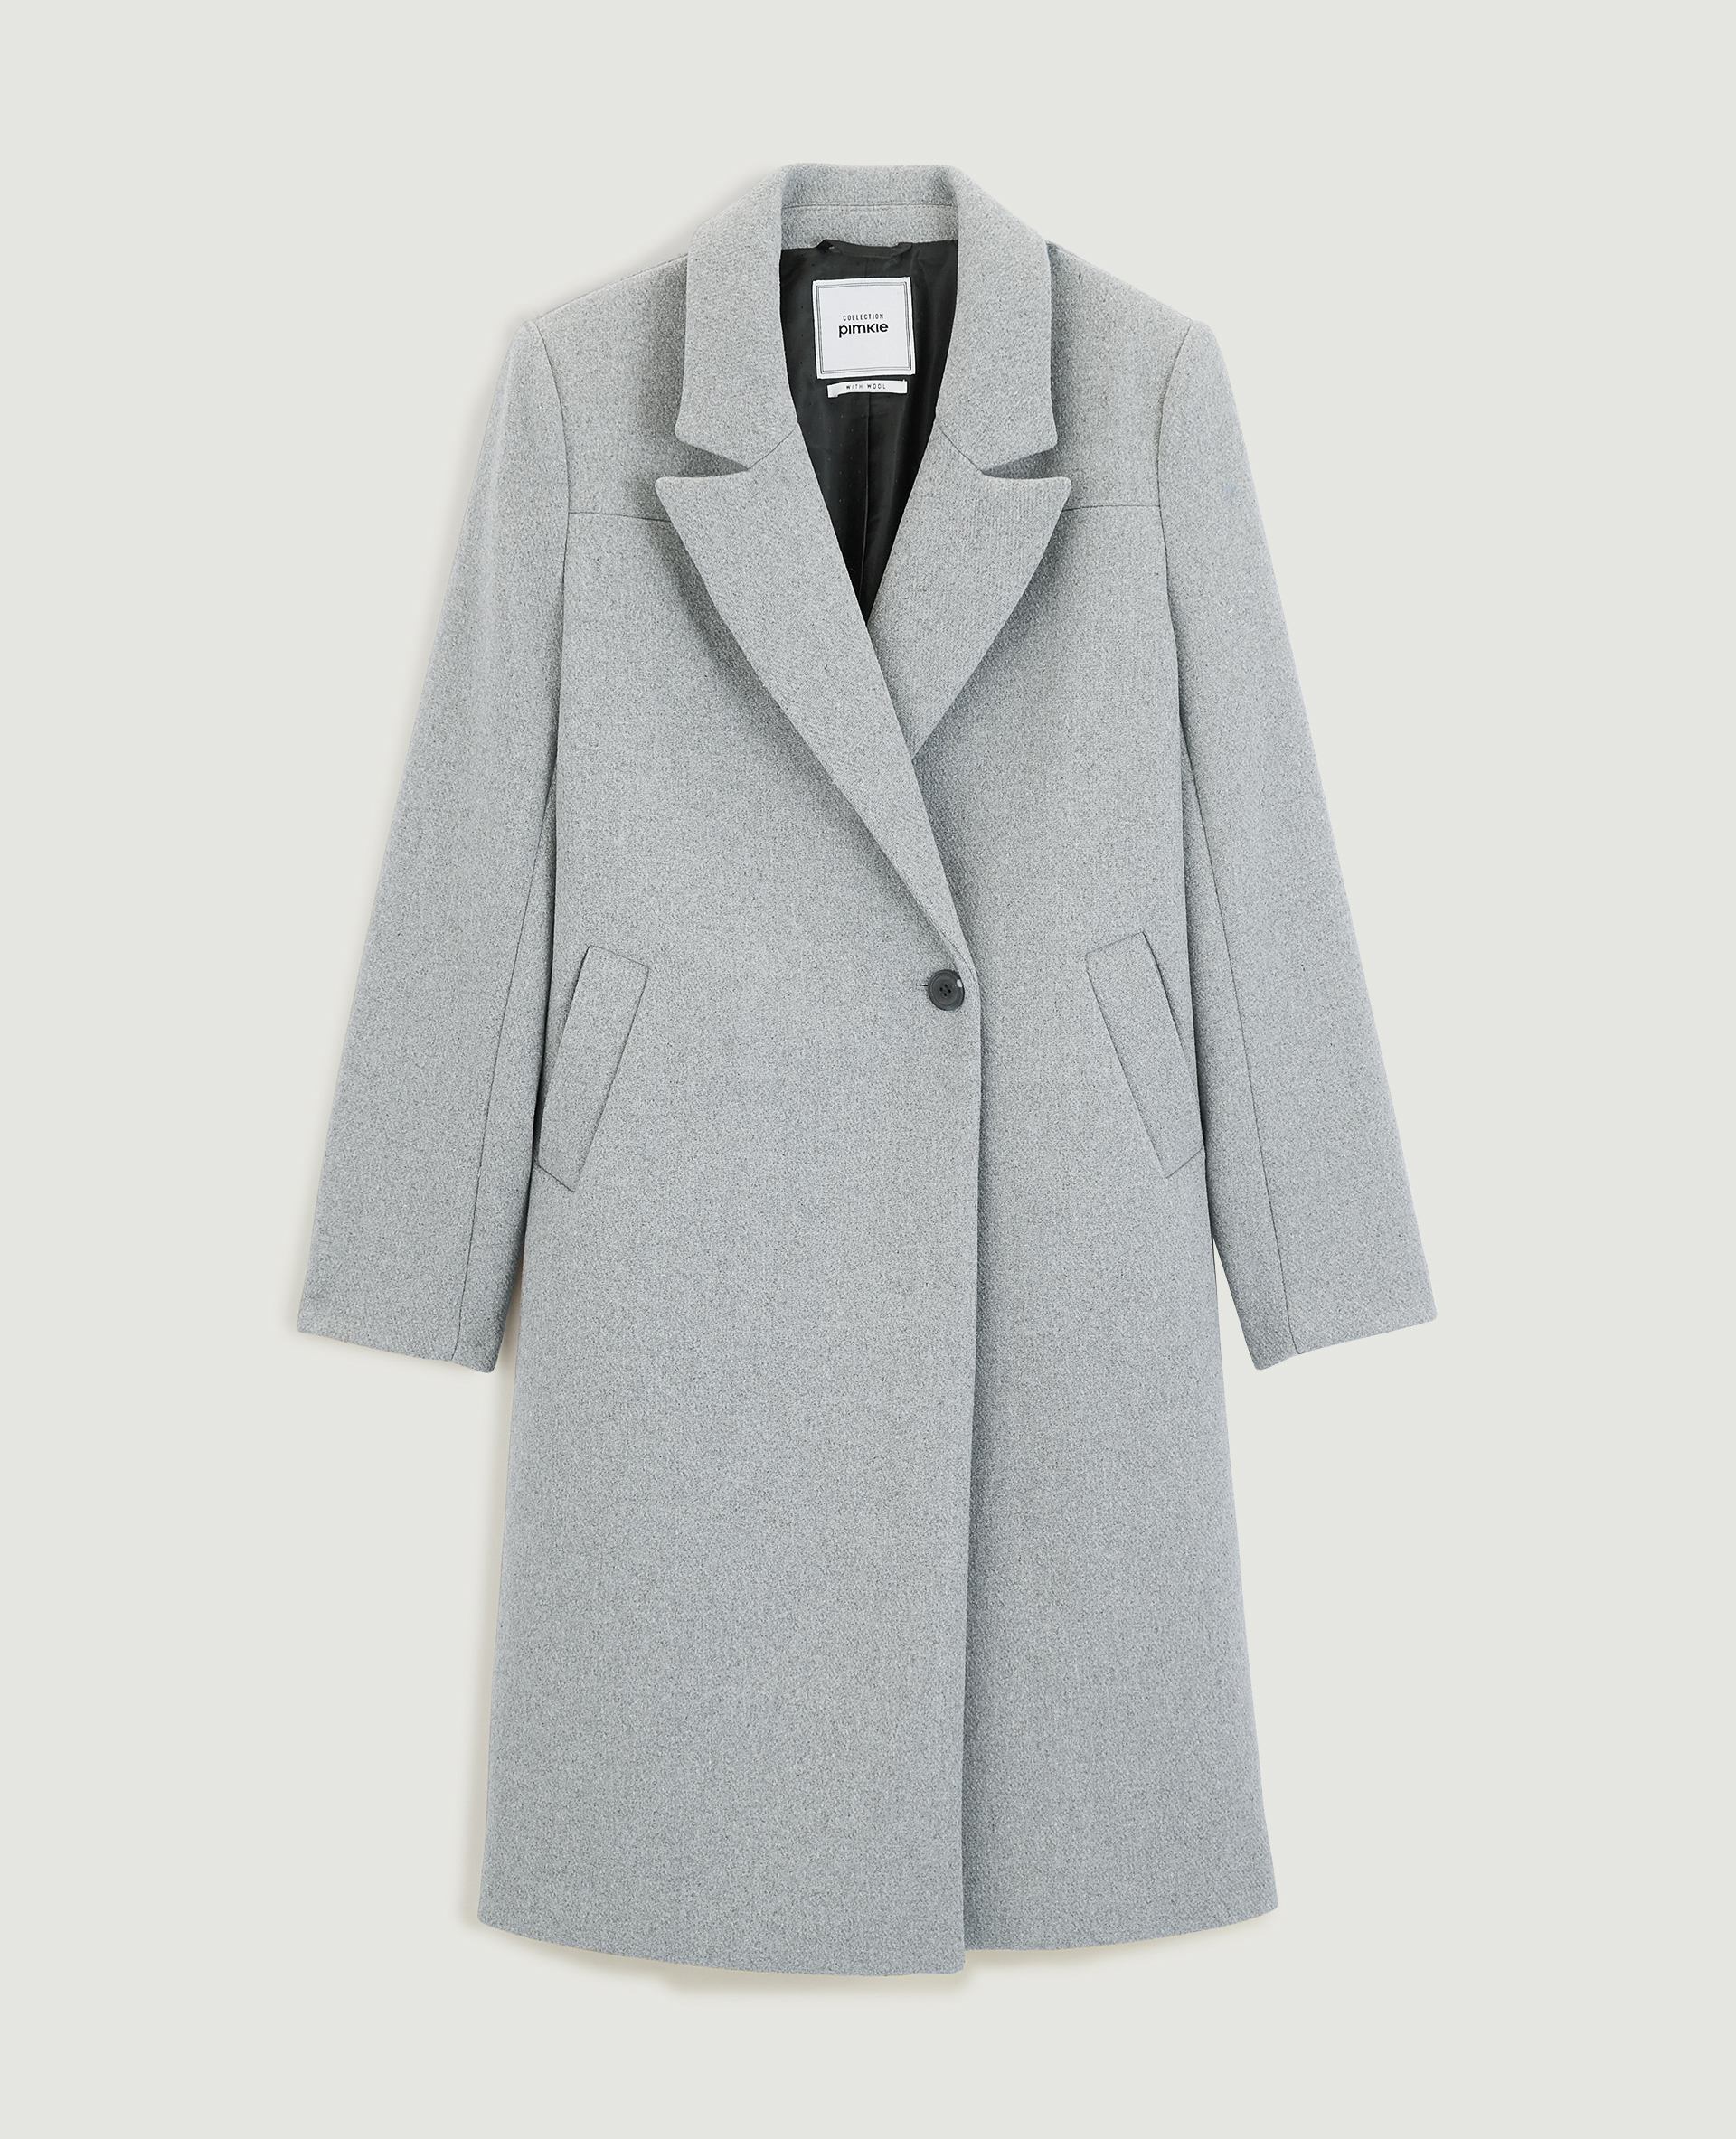 Manteau long drap de laine gris - Pimkie